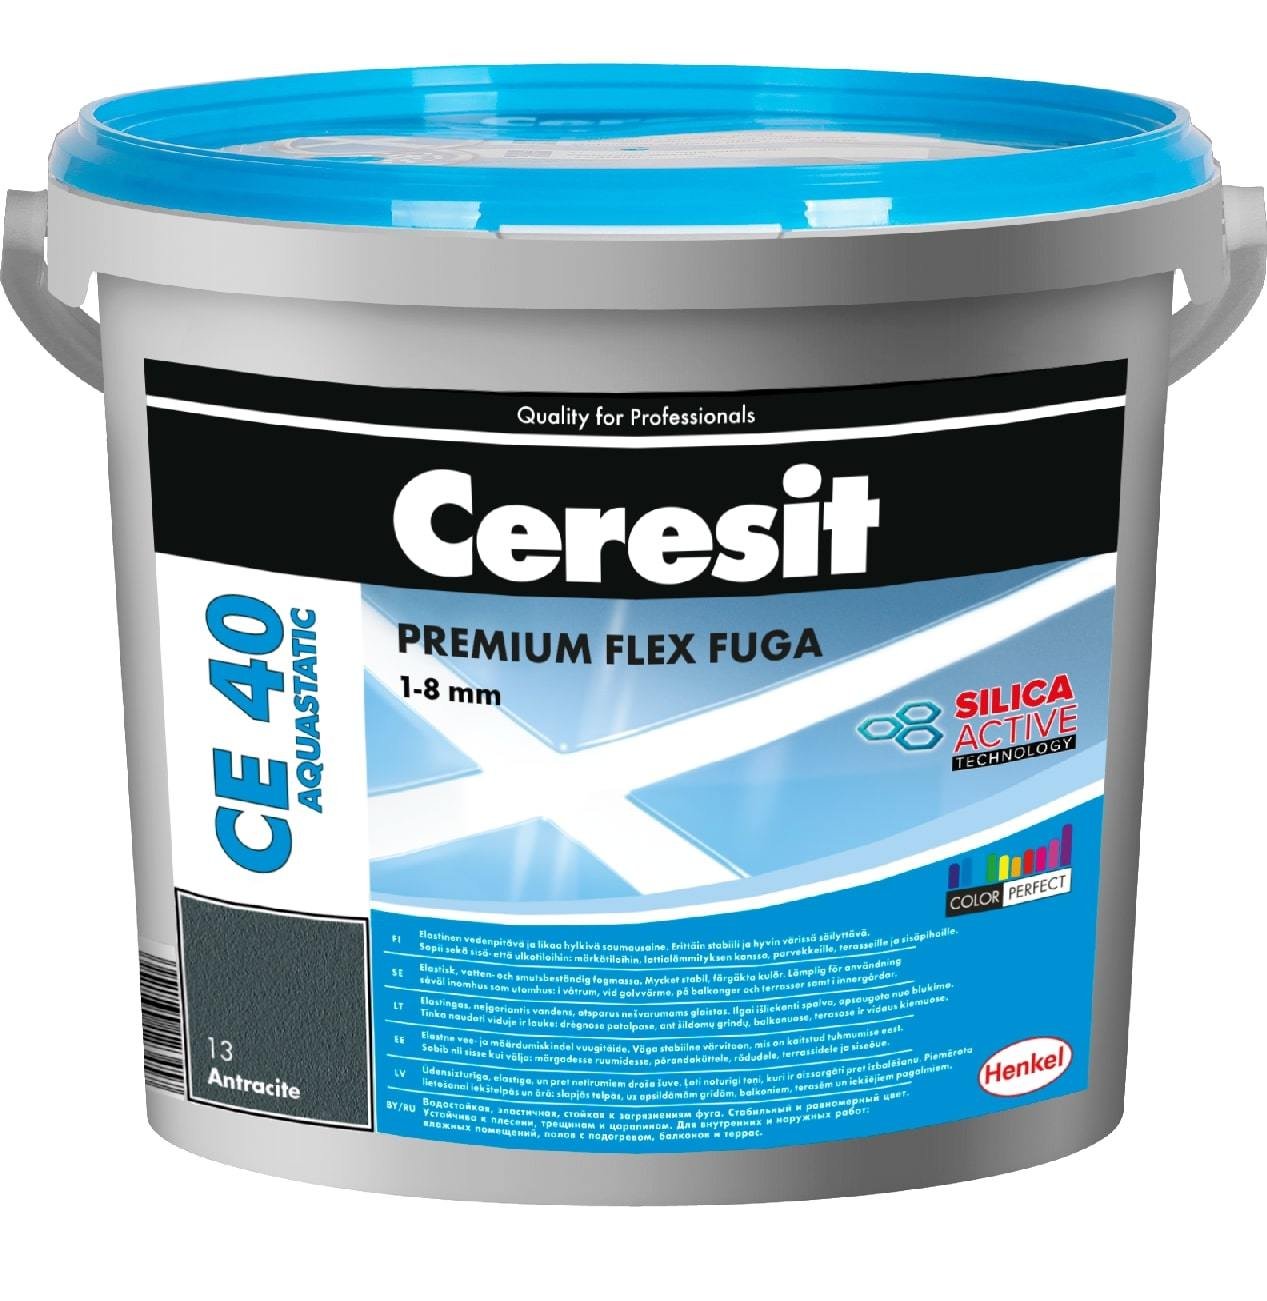 Elastingas plytelių siūlių glaistas CERESIT CE40 AQUASTATIC 12, cemento pilkumo sp., 5 kg